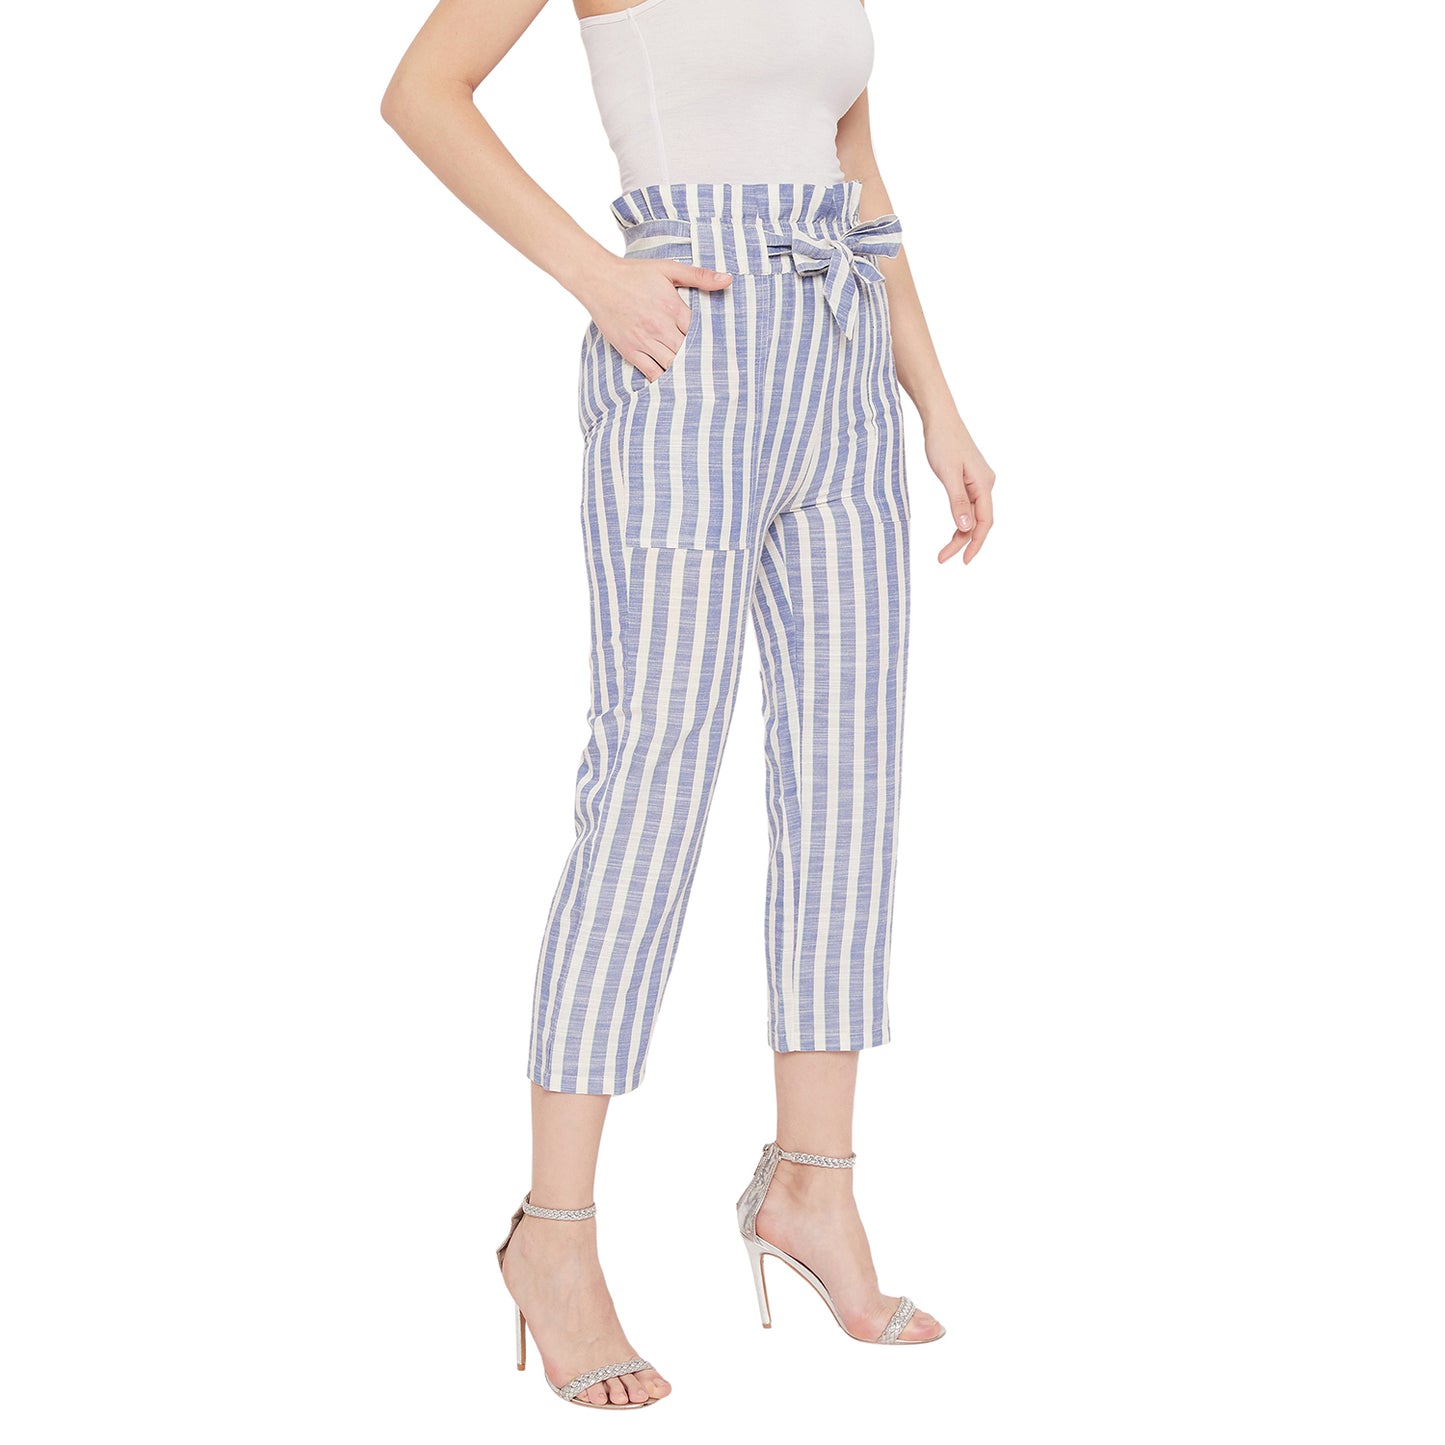 Women White and Blue Stripe Cigarette Trouser